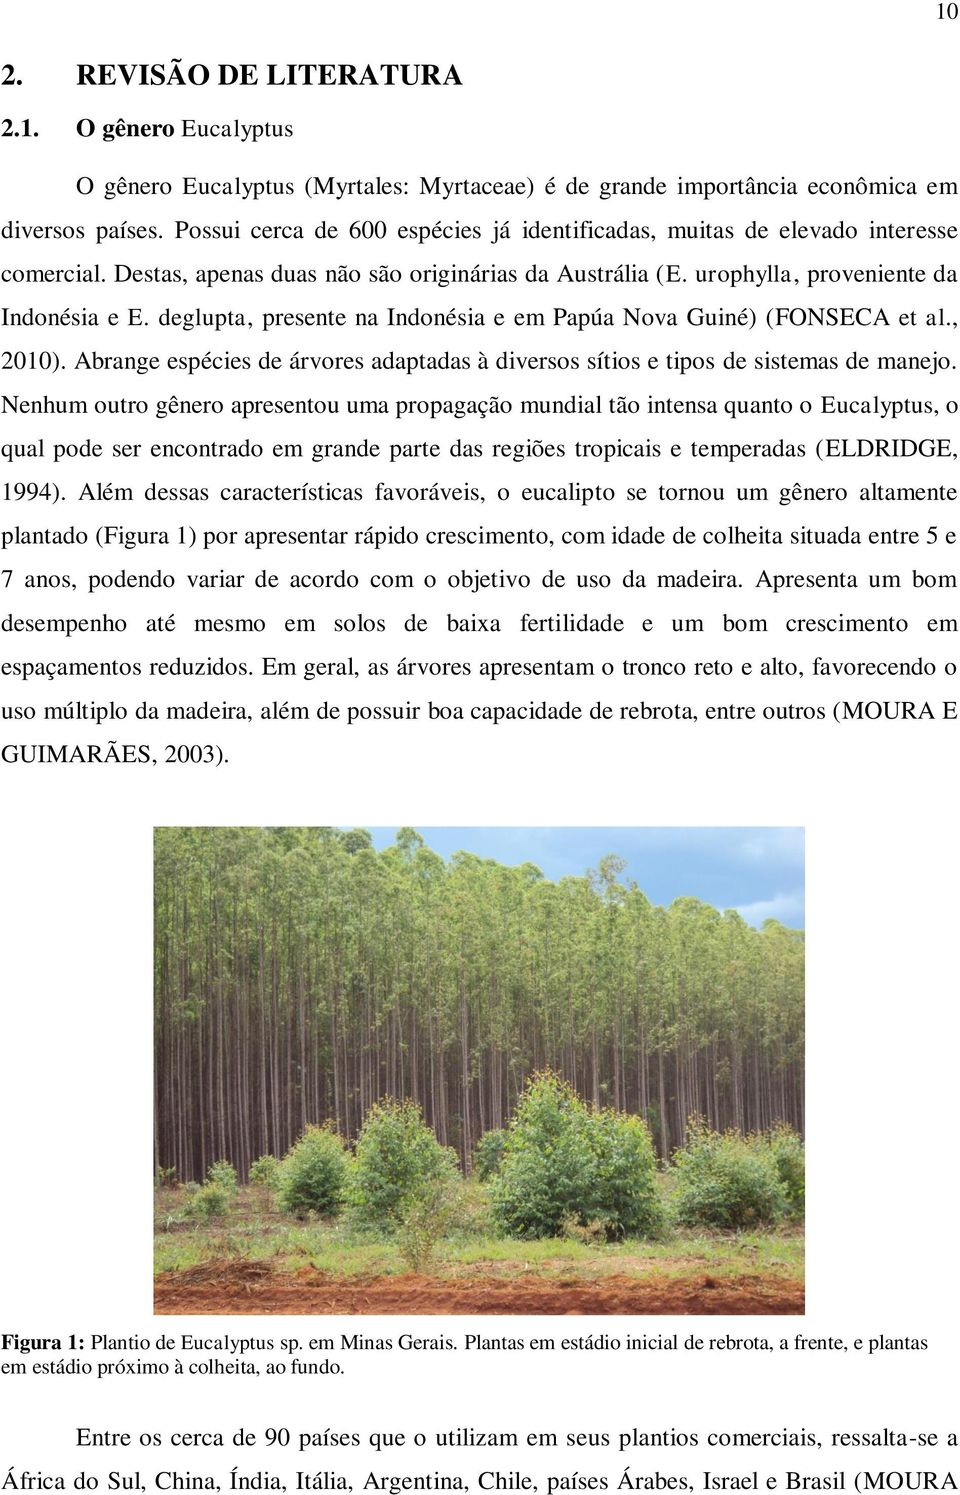 deglupta, presente na Indonésia e em Papúa Nova Guiné) (FONSECA et al., 2010). Abrange espécies de árvores adaptadas à diversos sítios e tipos de sistemas de manejo.